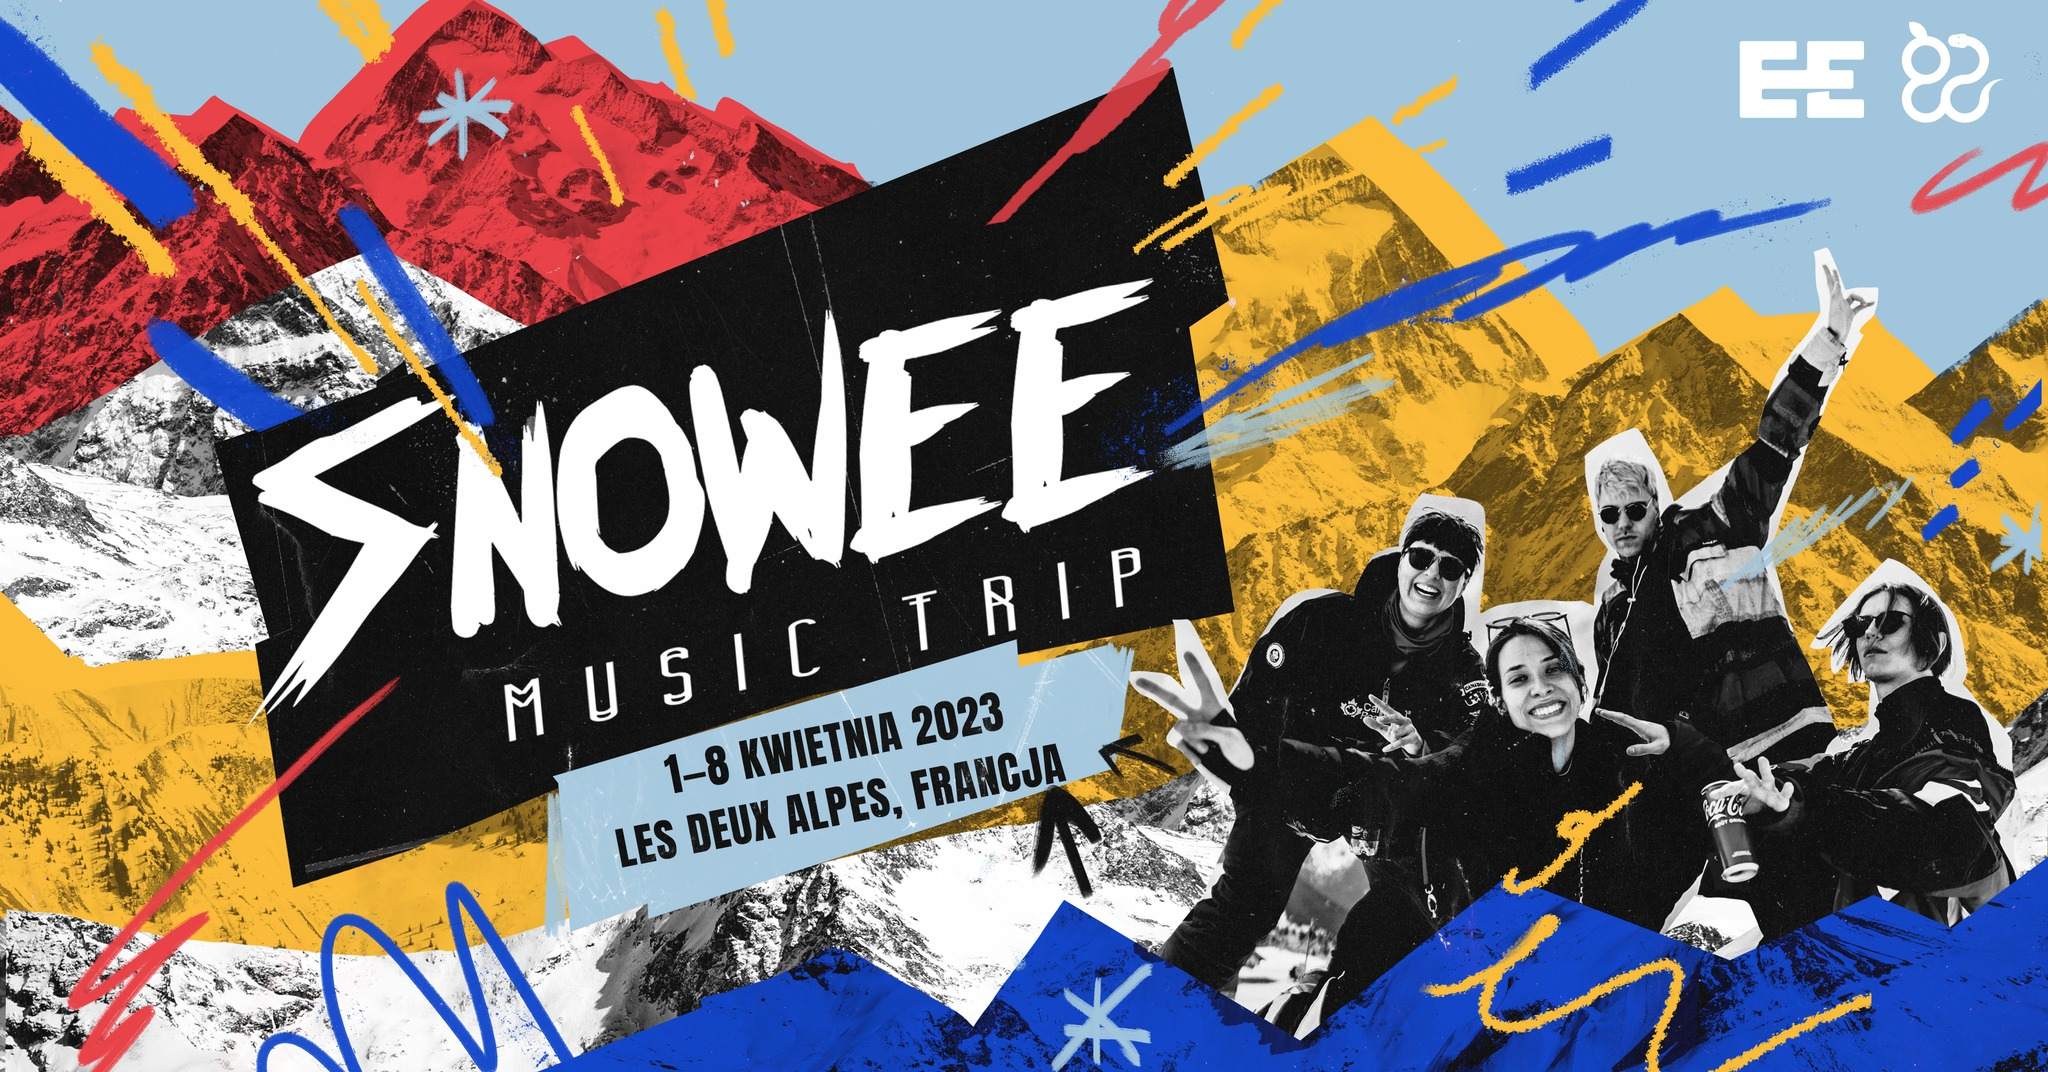 Snowee Music Trip 2023 - フライヤー表